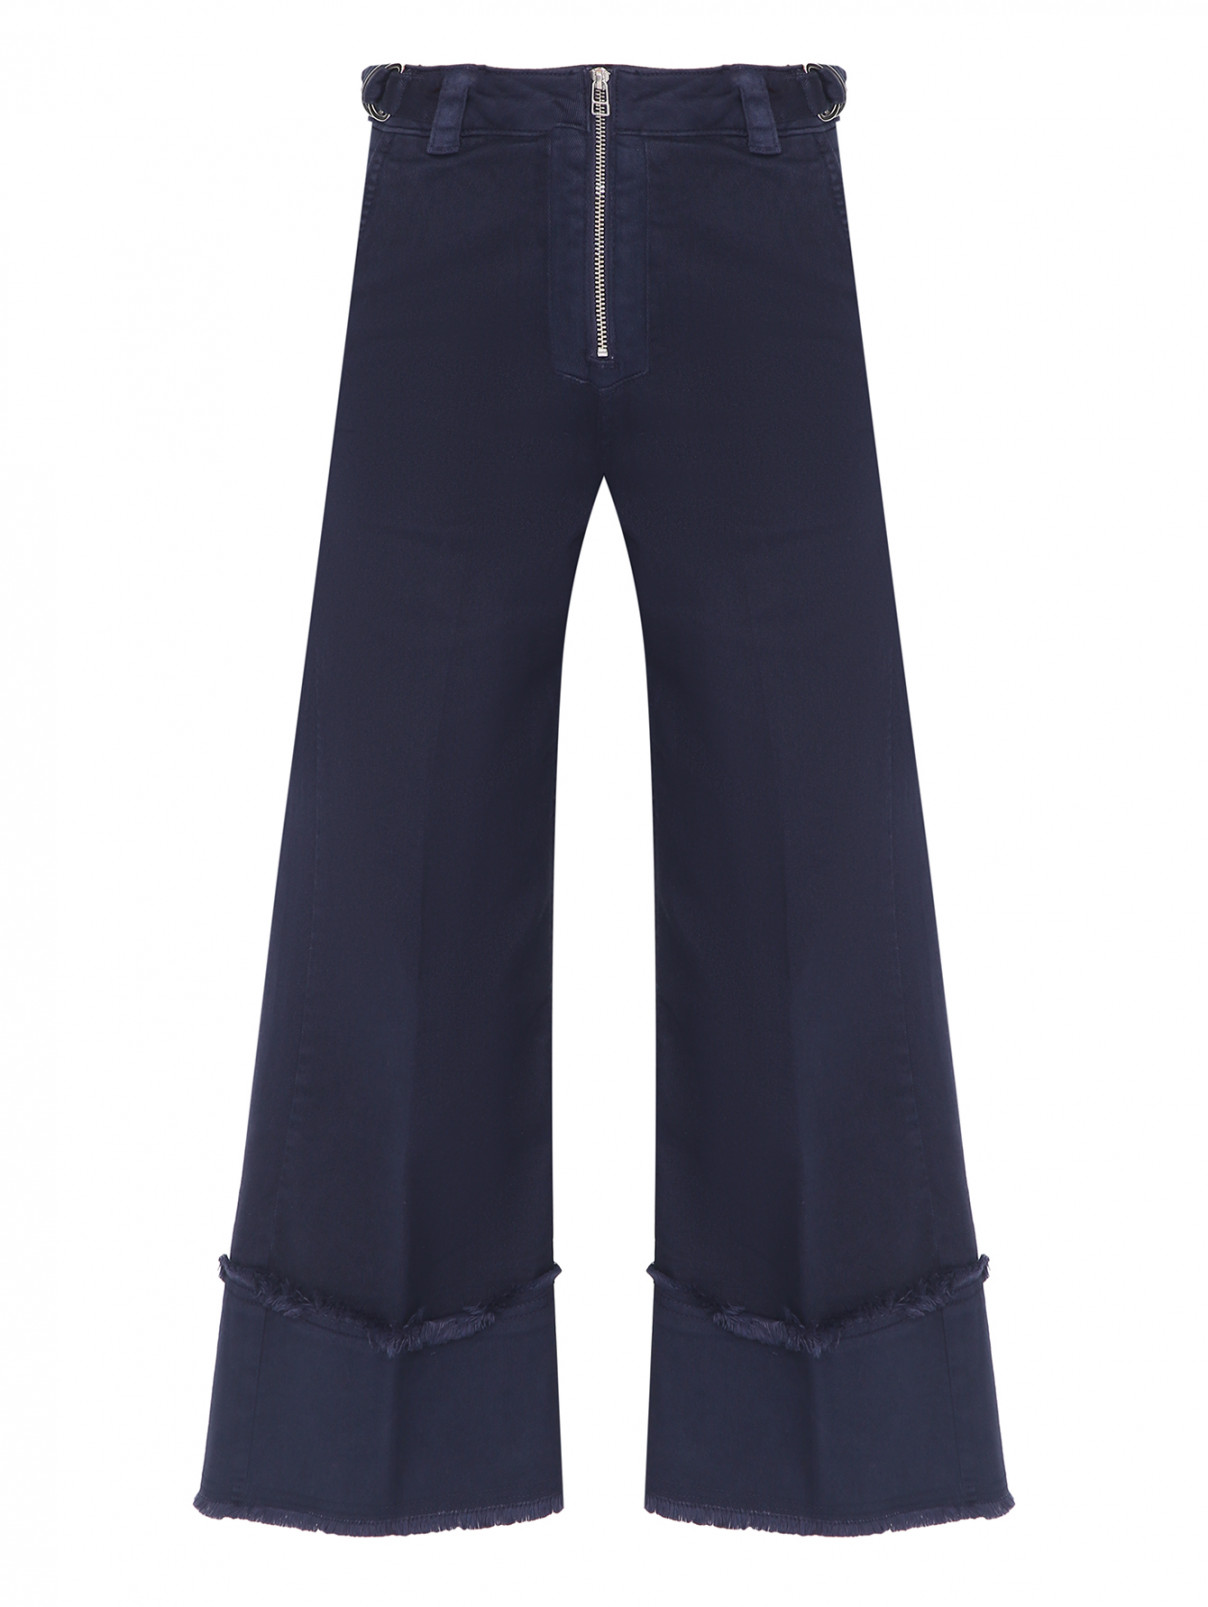 Джинсы-клеш декорированные молнией и вышивкой на кармане Max&Co  –  Общий вид  – Цвет:  Синий